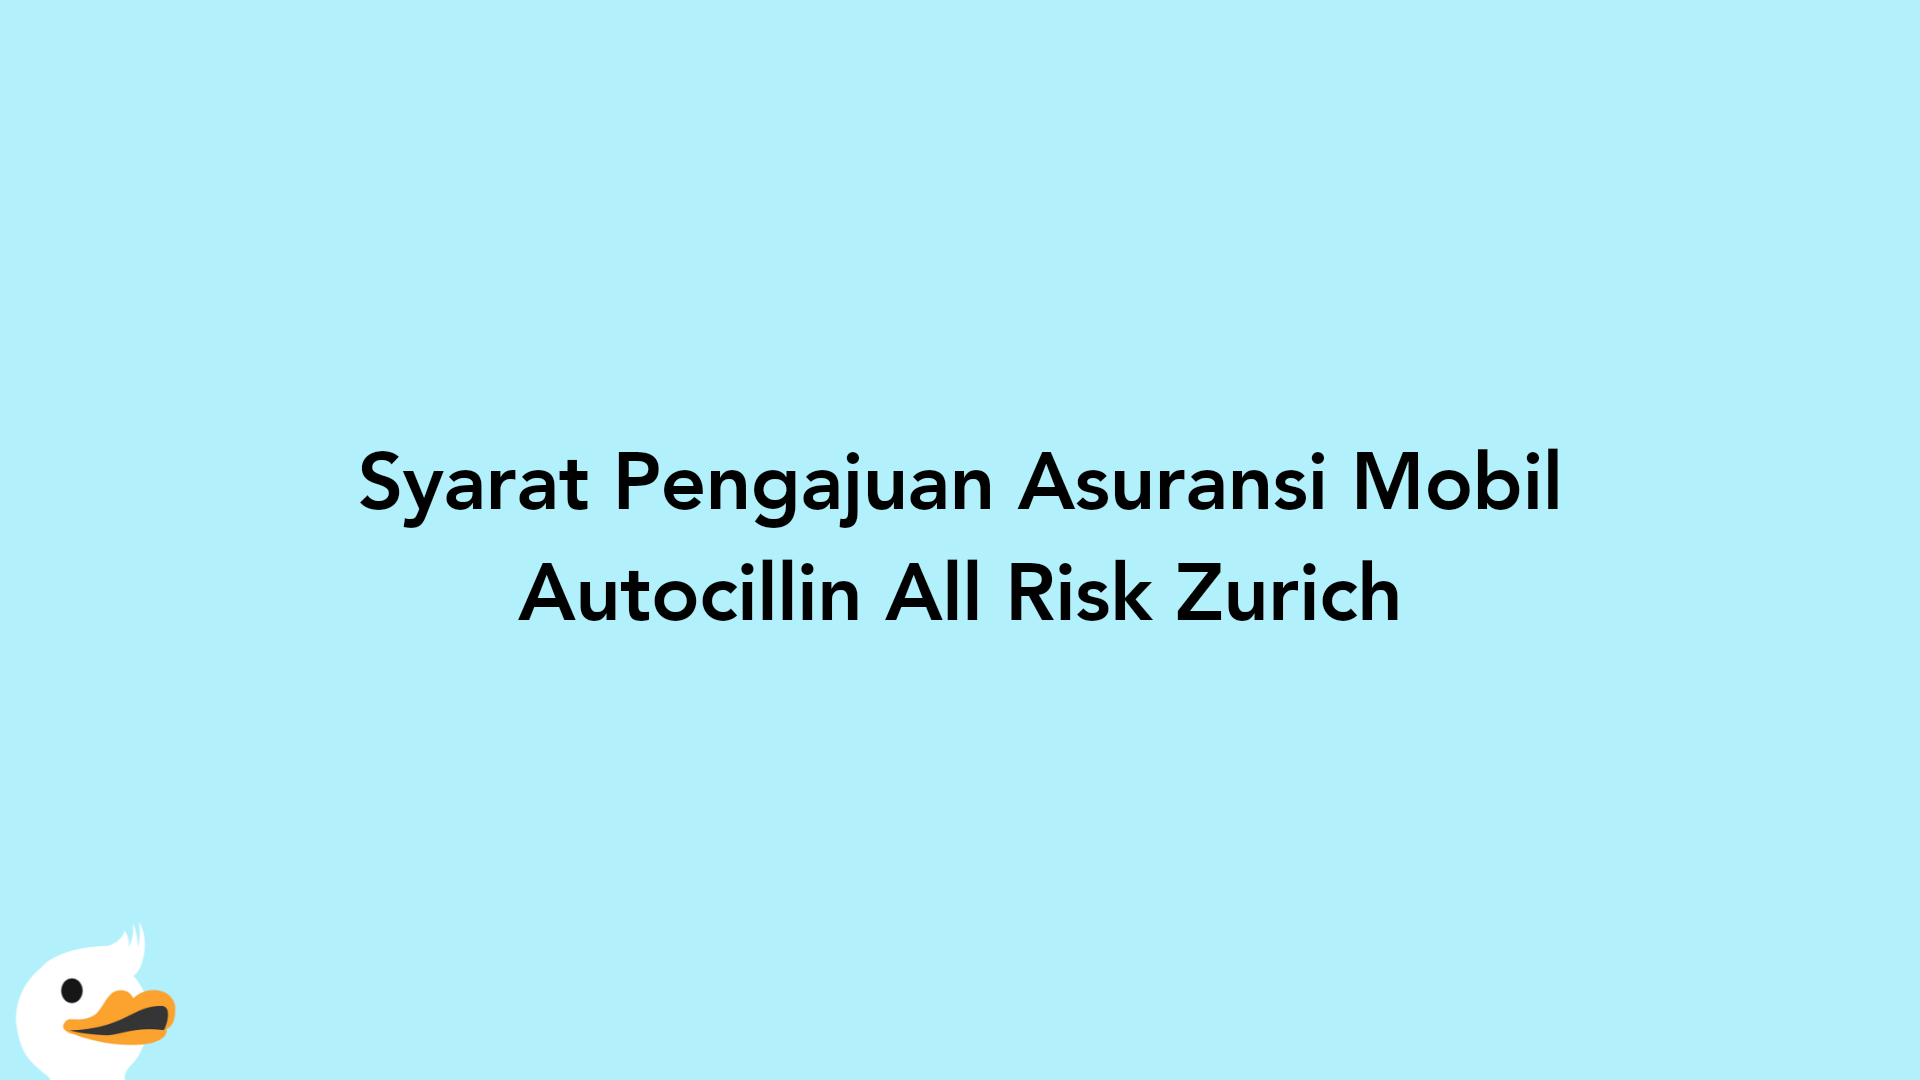 Syarat Pengajuan Asuransi Mobil Autocillin All Risk Zurich